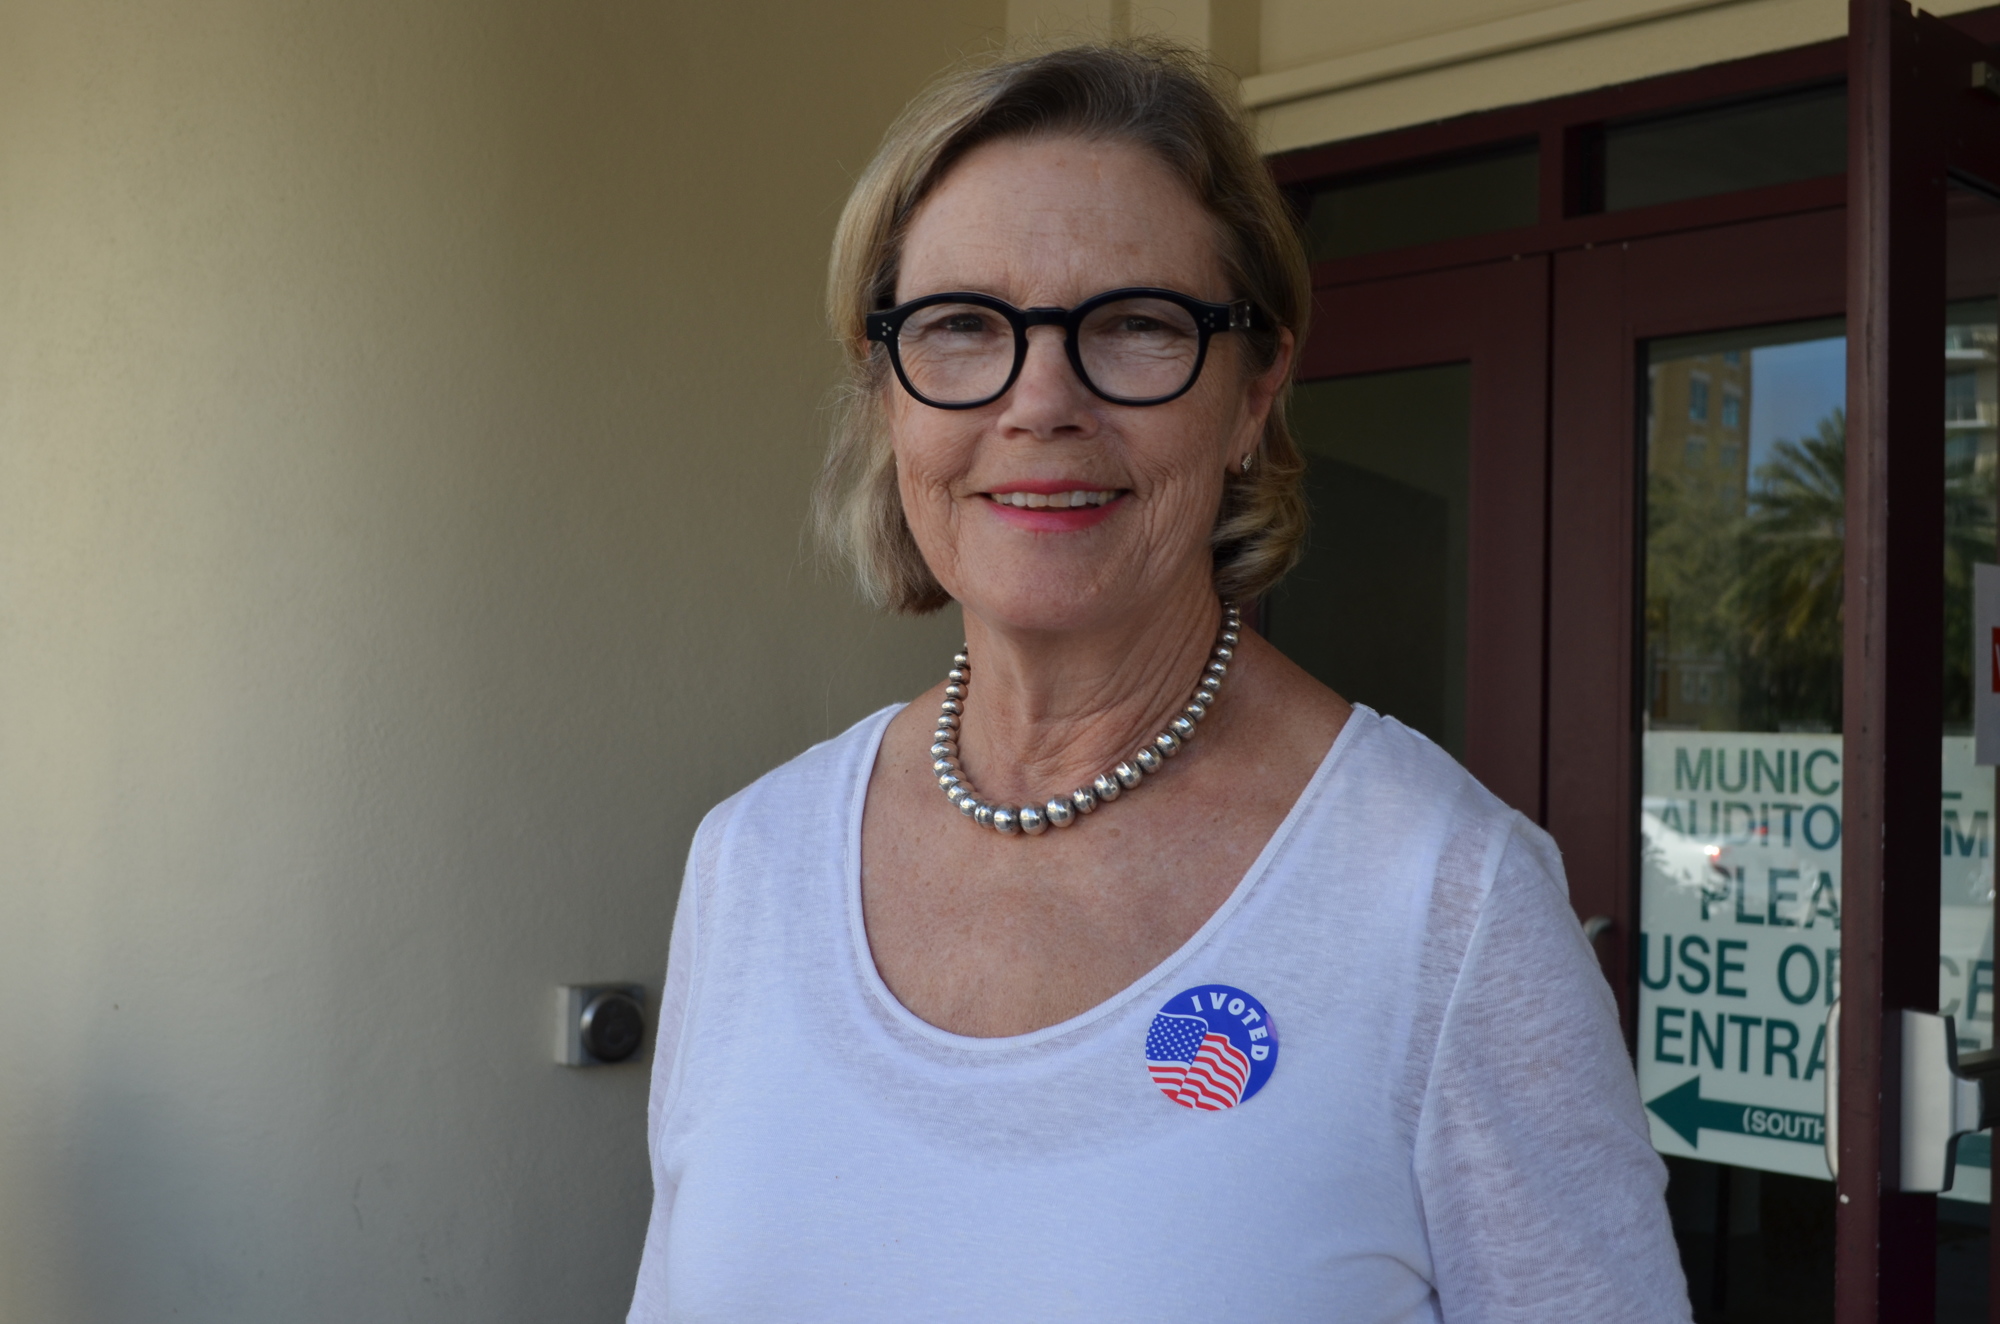 Louise Huin cast her ballot at the Sarasota Municipal Auditorium.